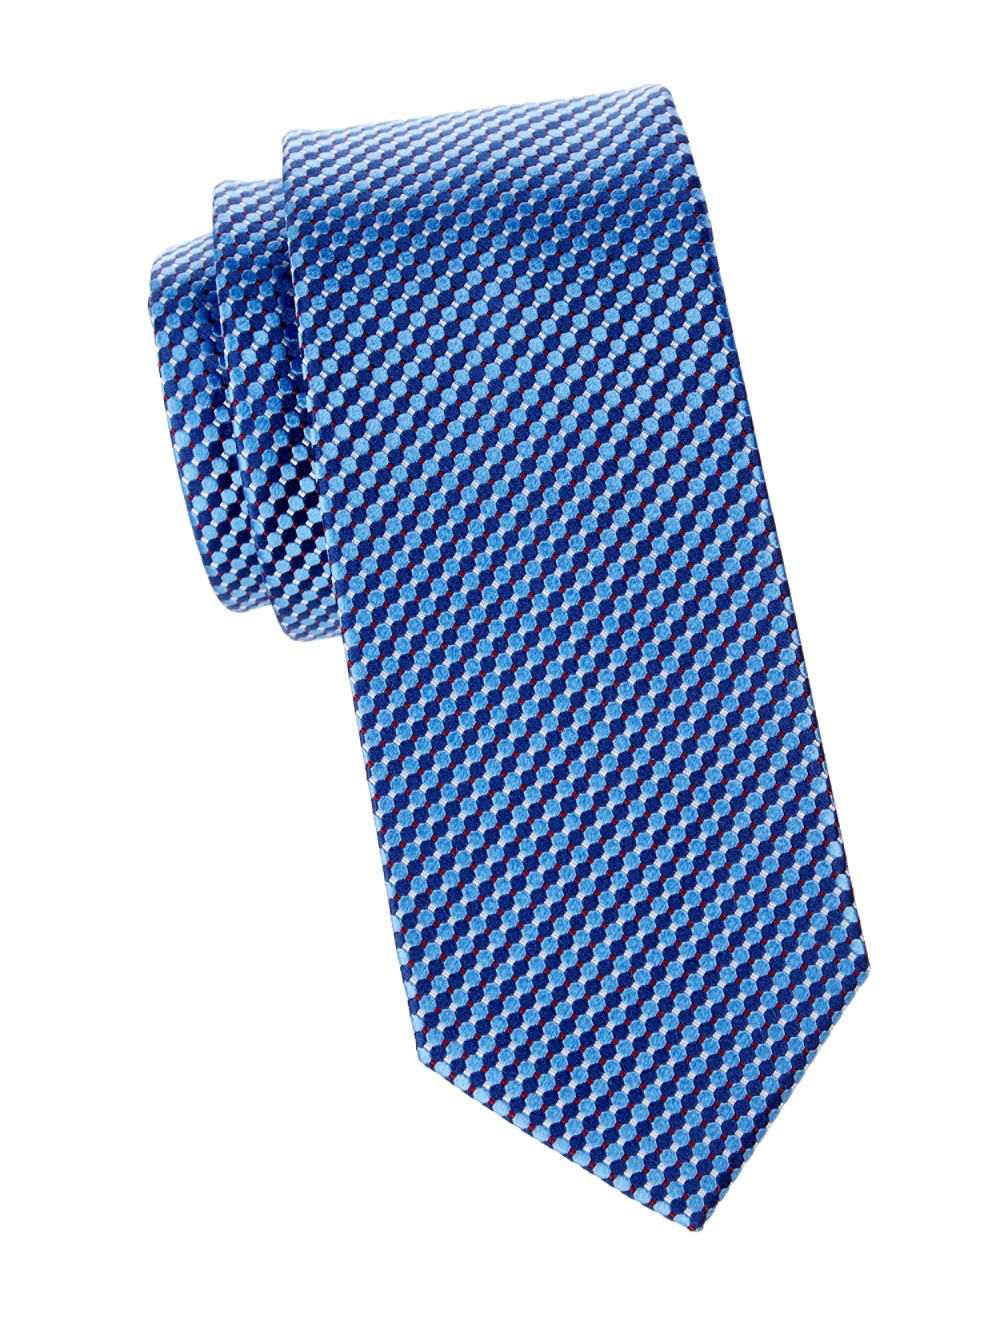 Шелковый галстук с мелкими кругами Eton, синий